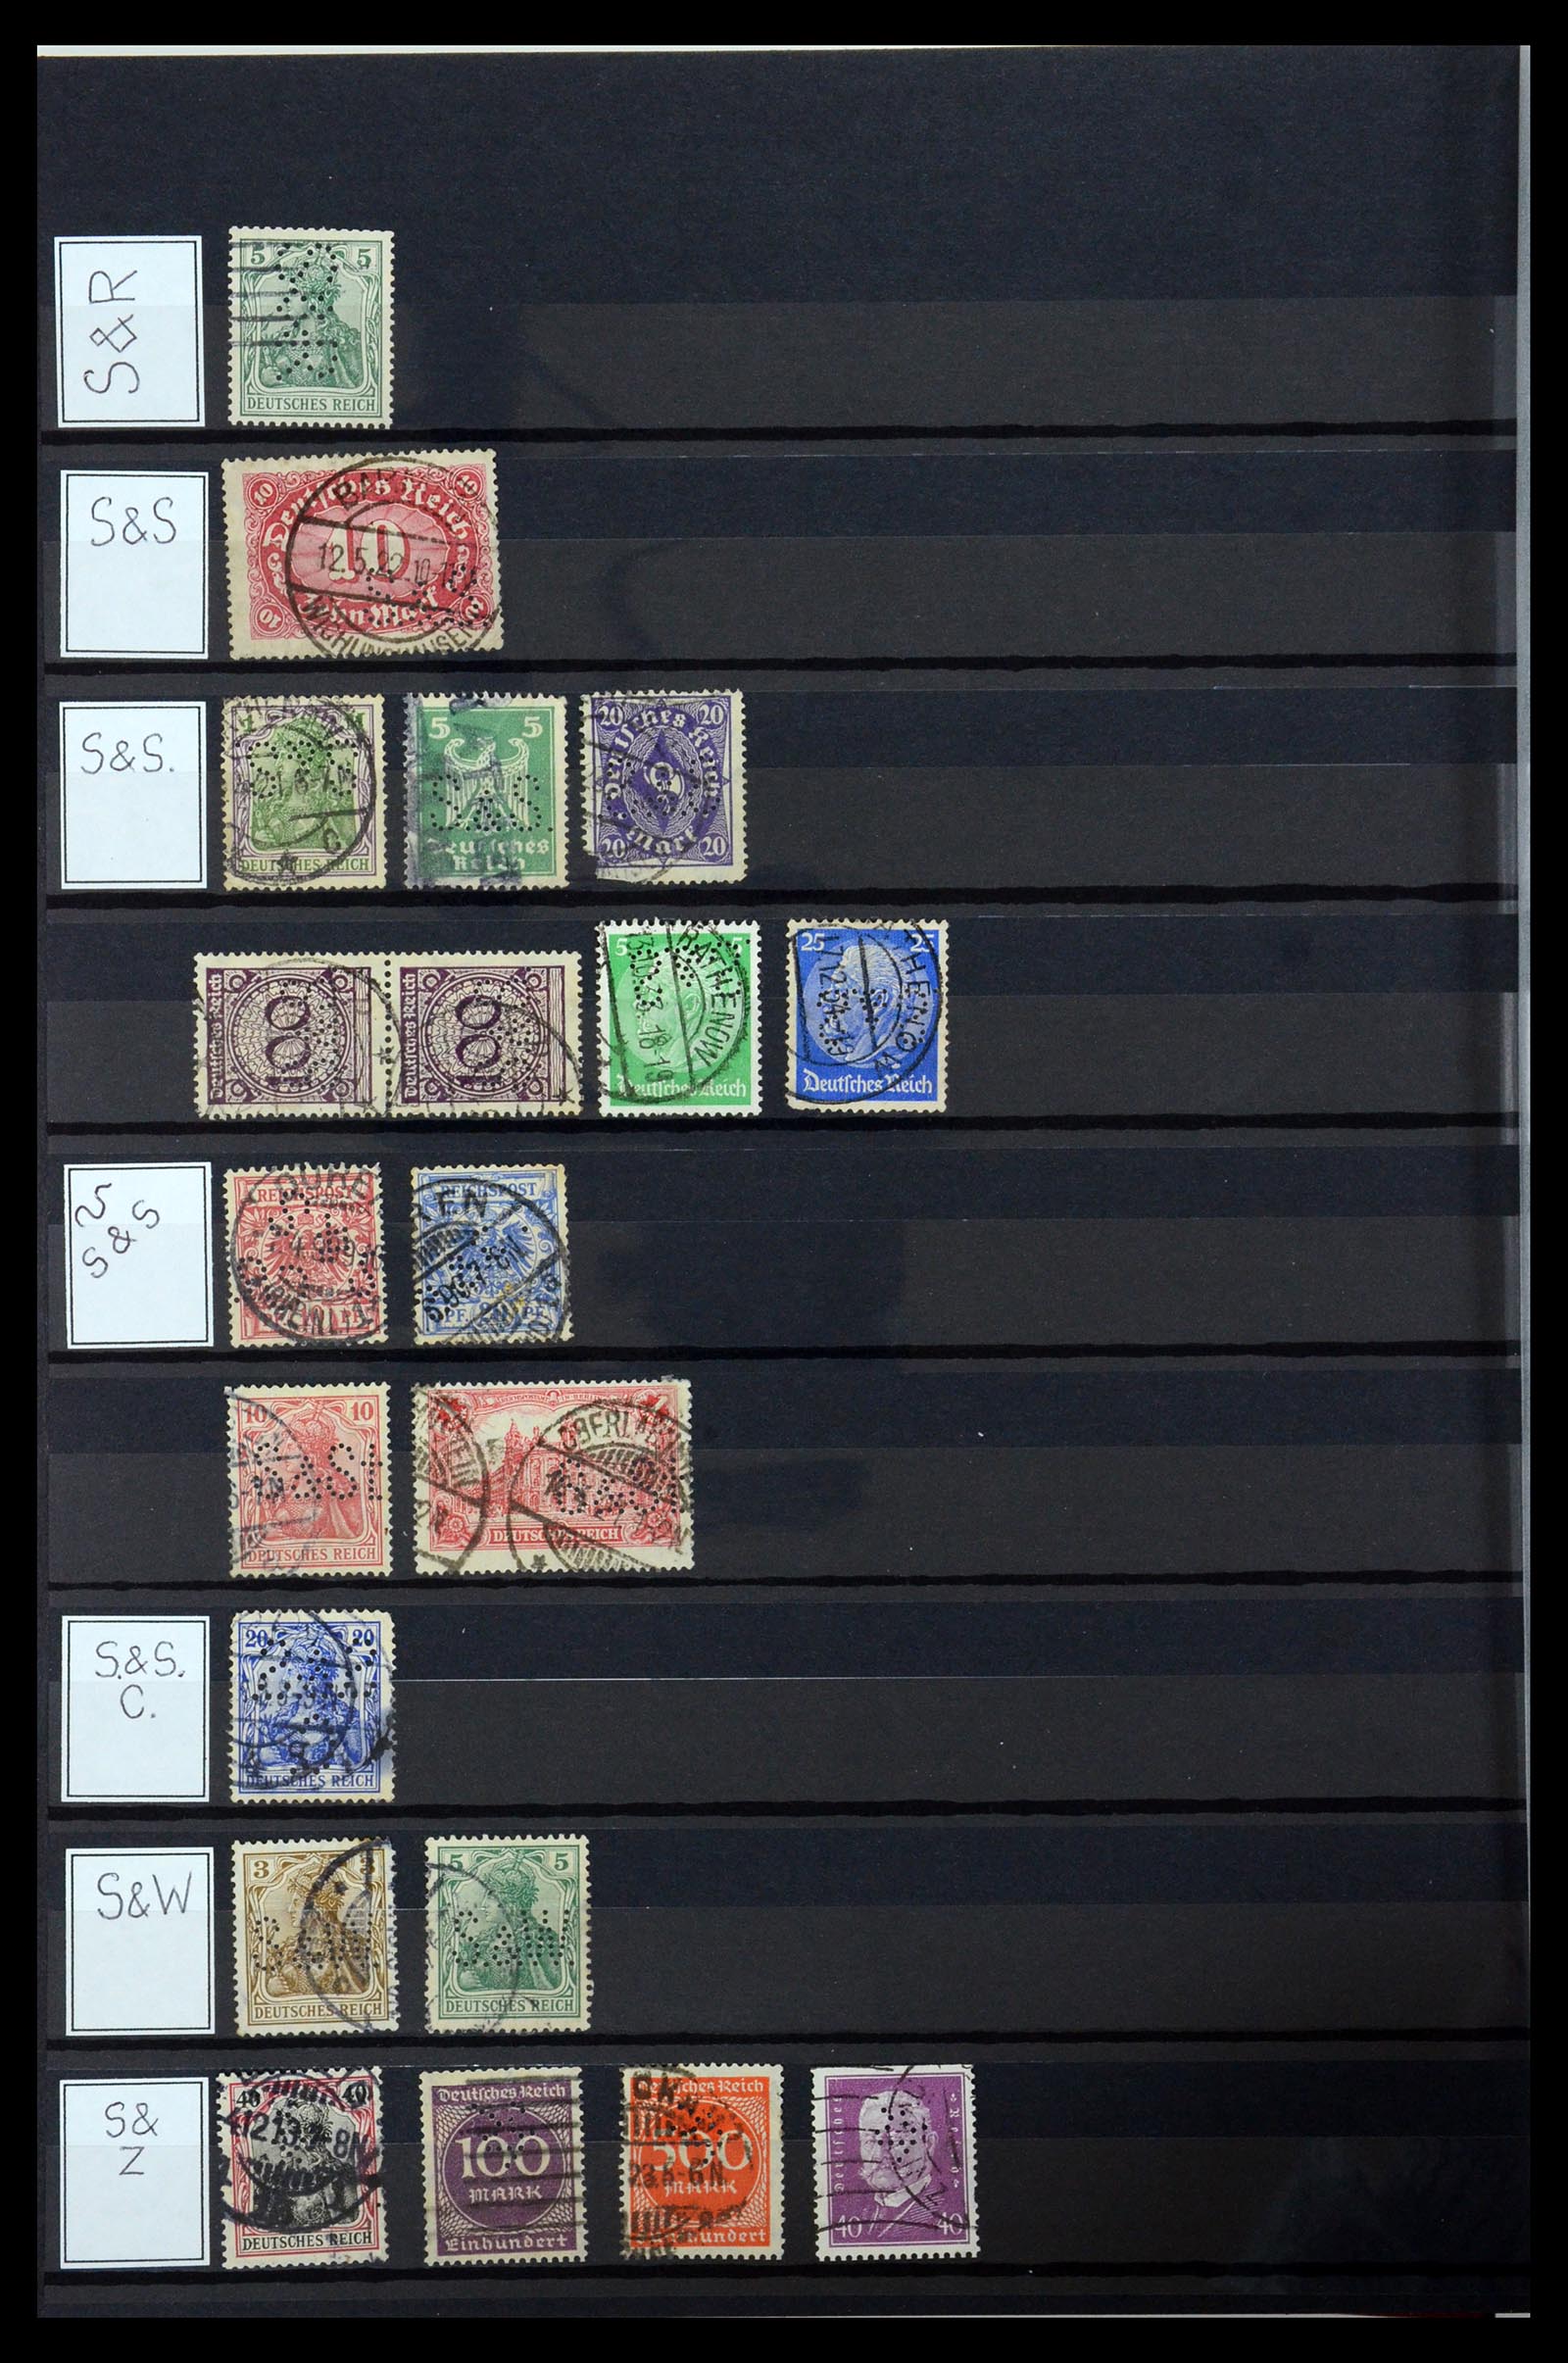 36405 310 - Stamp collection 36405 German Reich perfins 1880-1945.